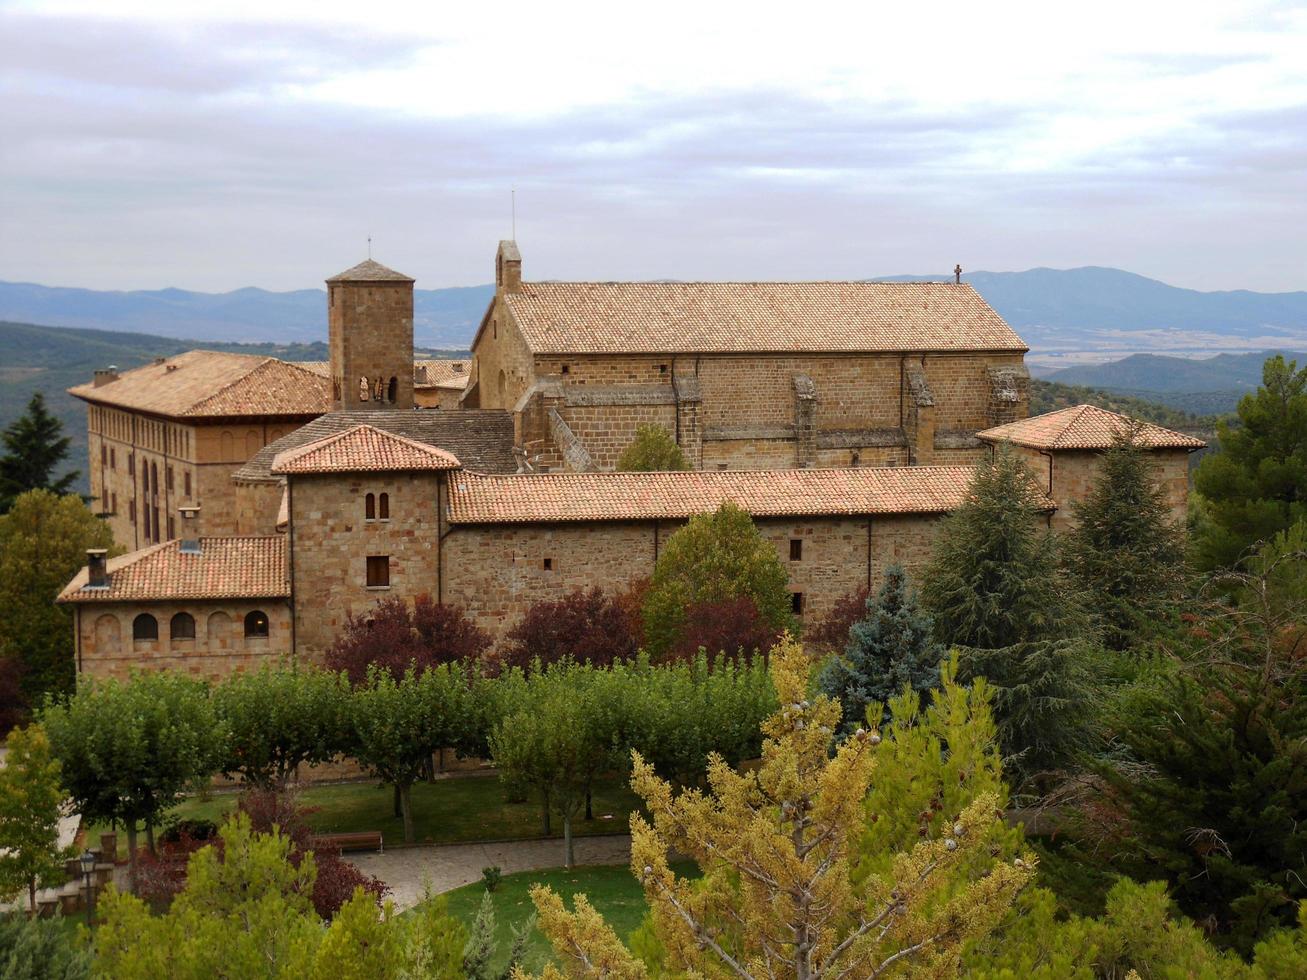 The Romanesque-style monastery photo